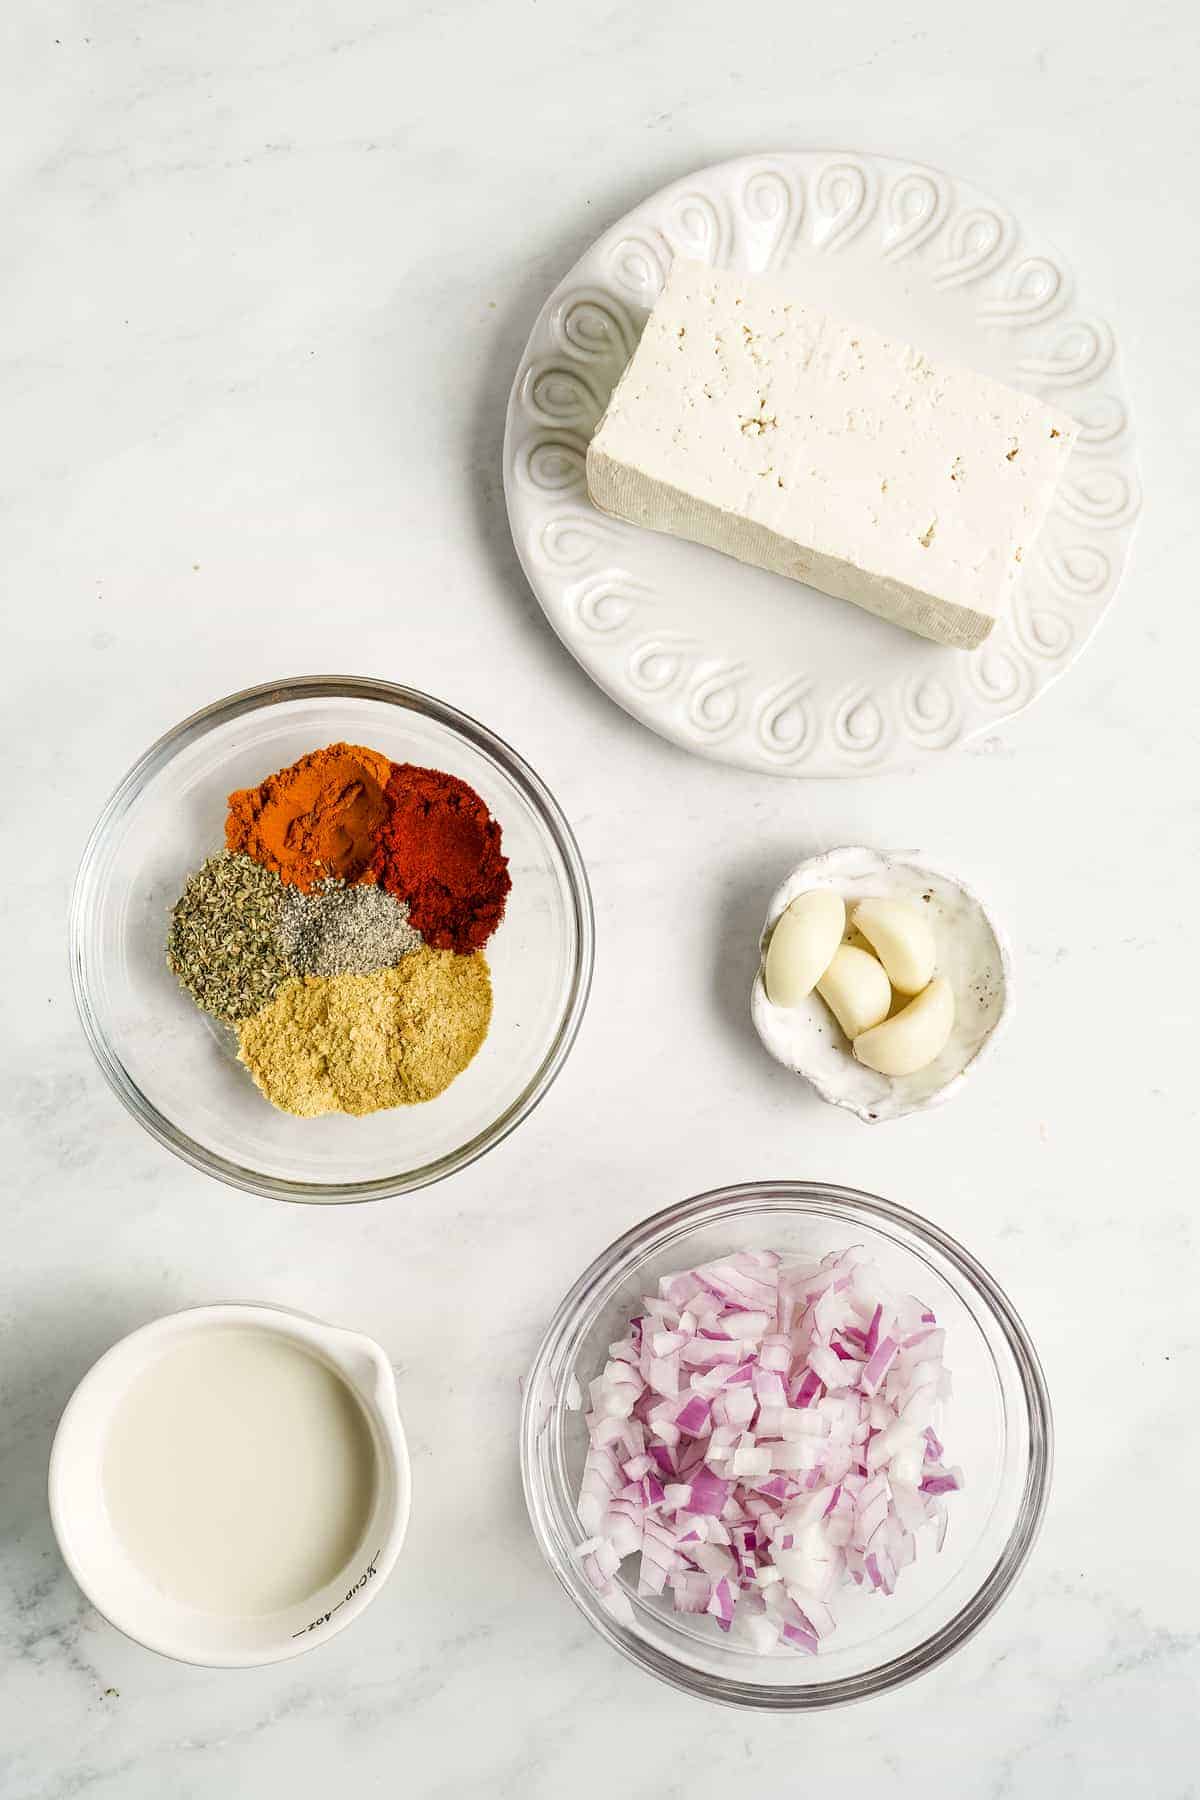 Ingredients for tofu scramble.